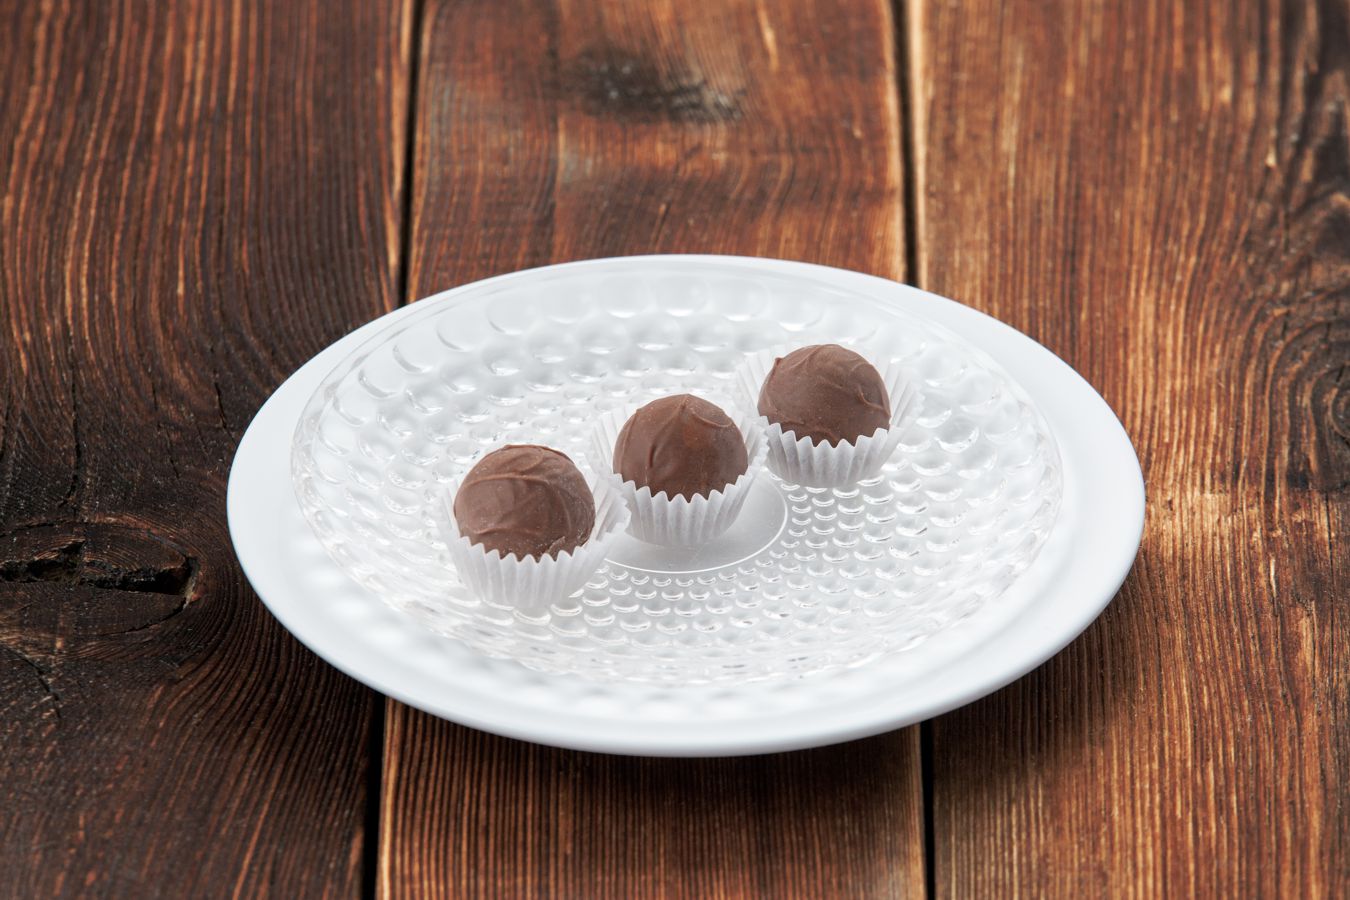 Шоколадные конфеты ручной работы с ромом (за 1 шт) 